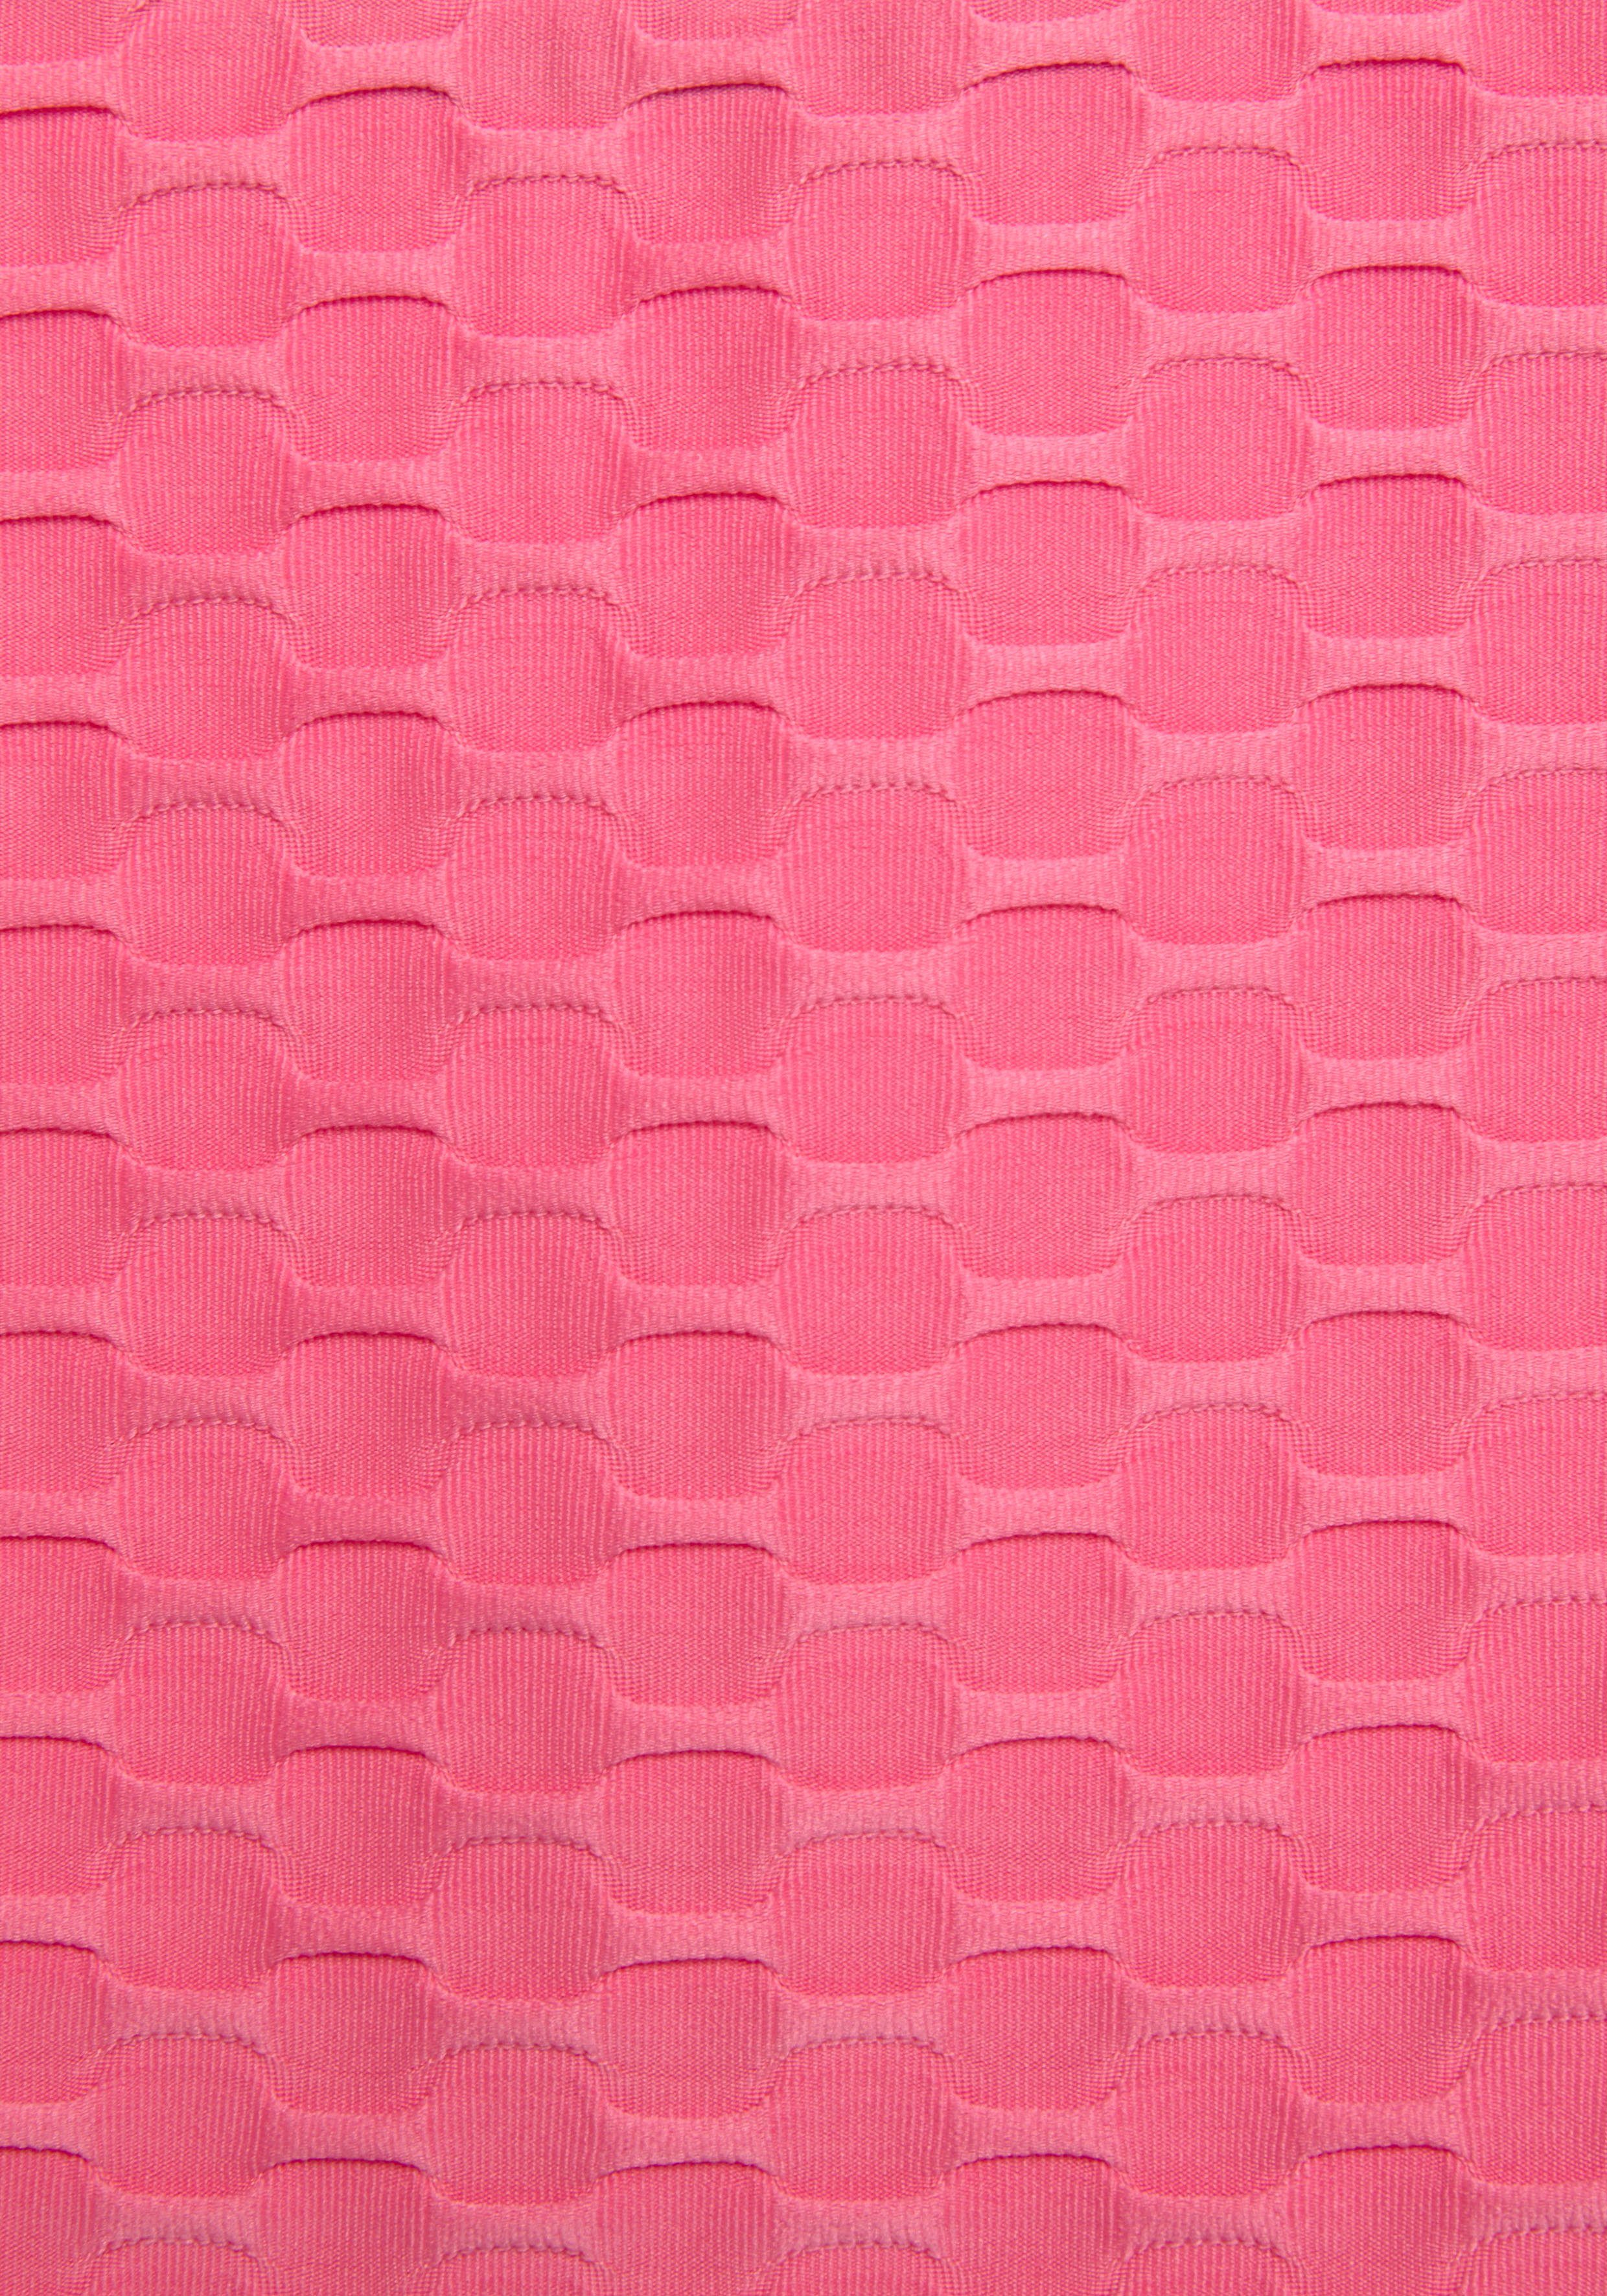 Bench. mit Mesheinsatz und Wabendesign pink Funktionsshirt